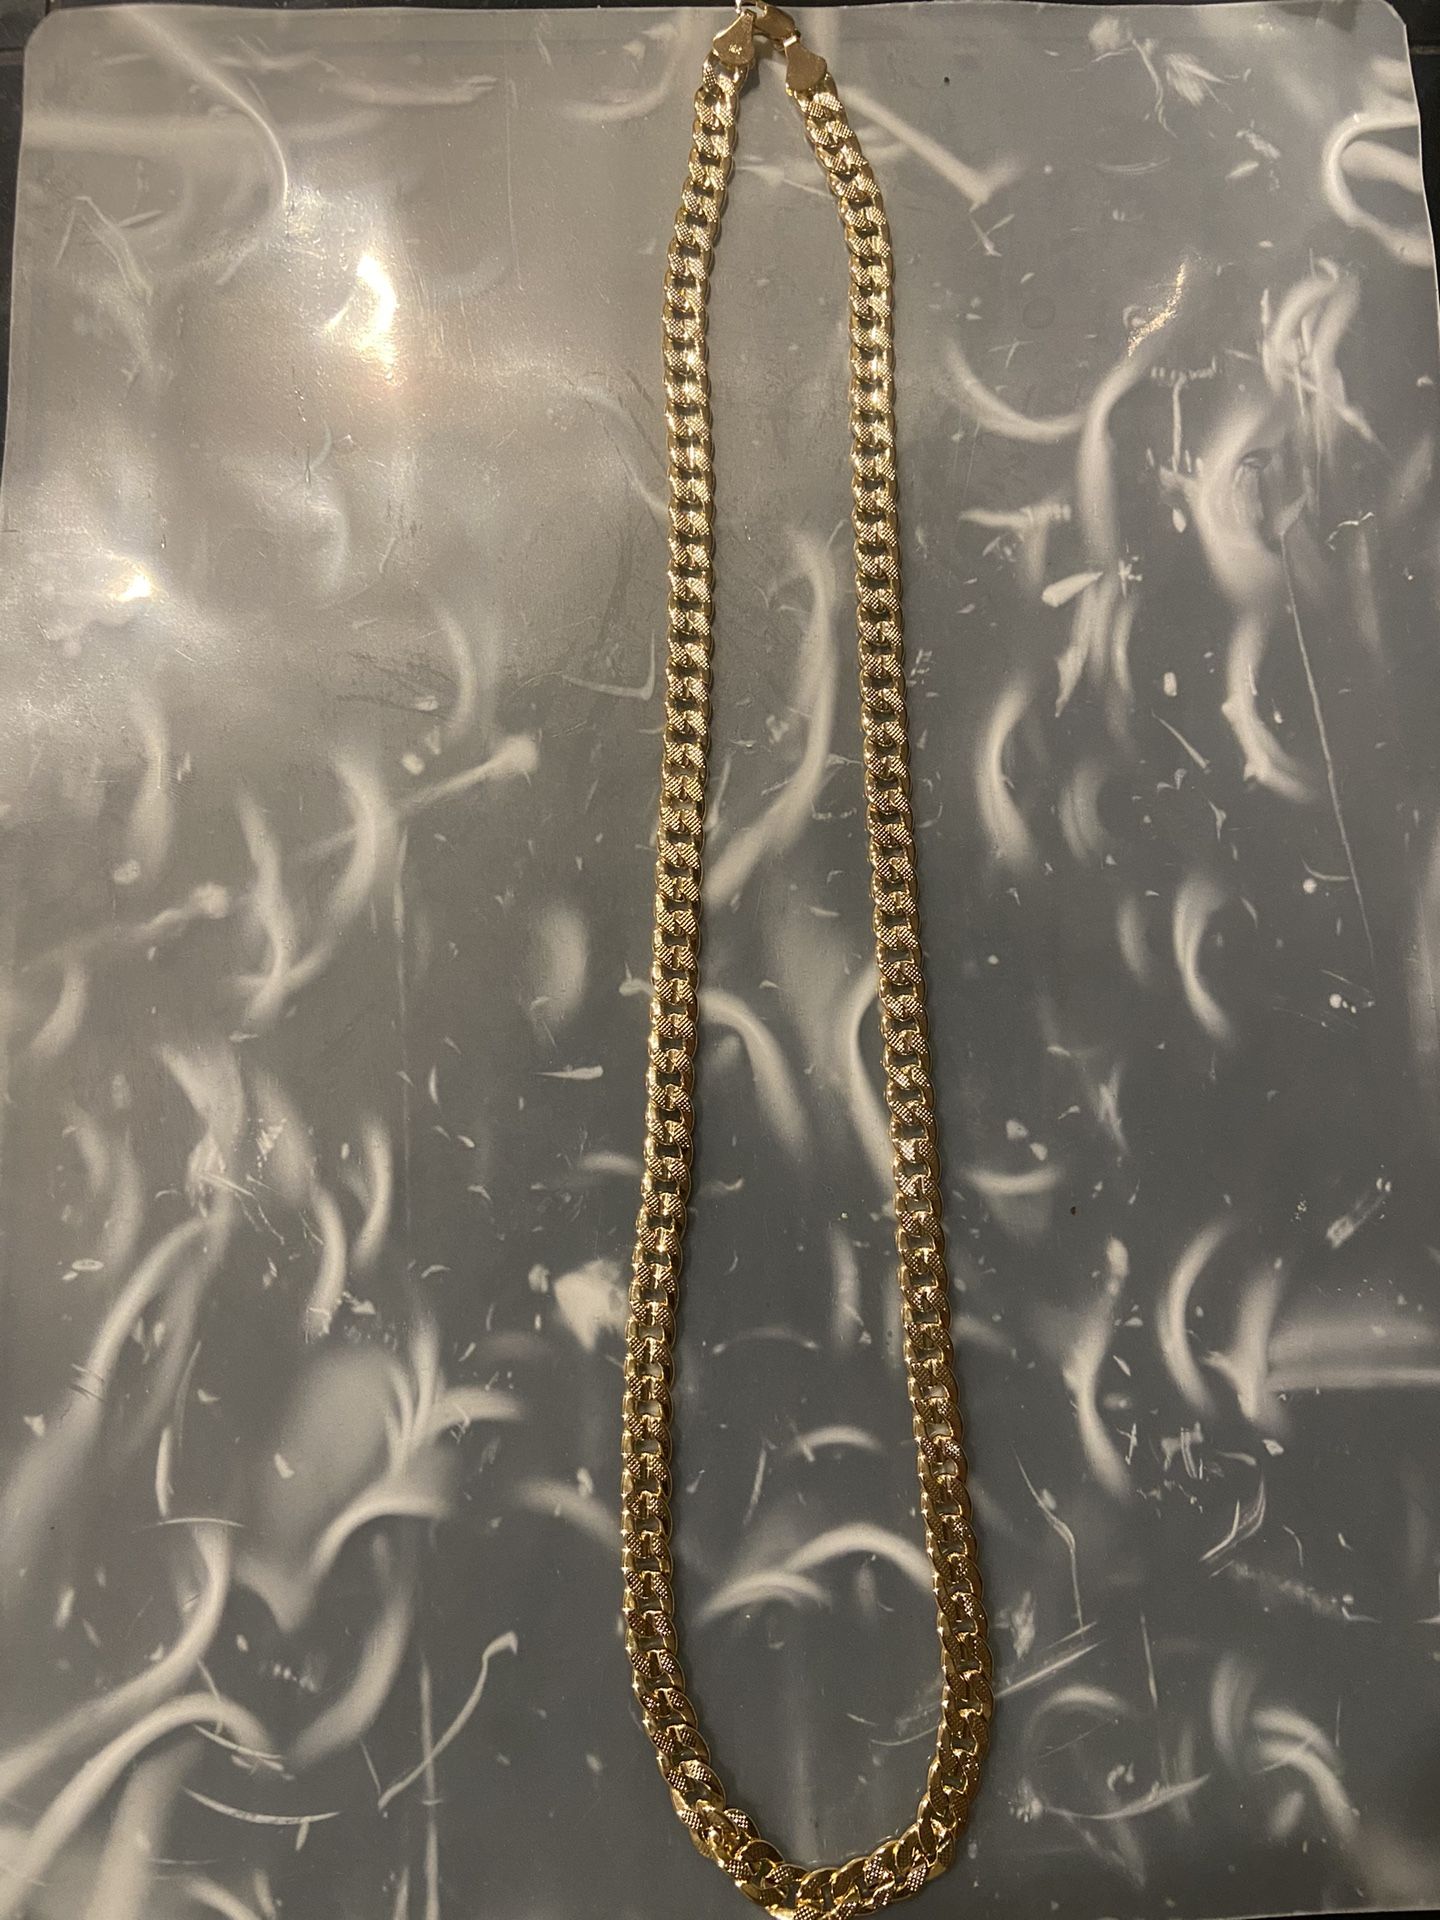 Thin gold chain